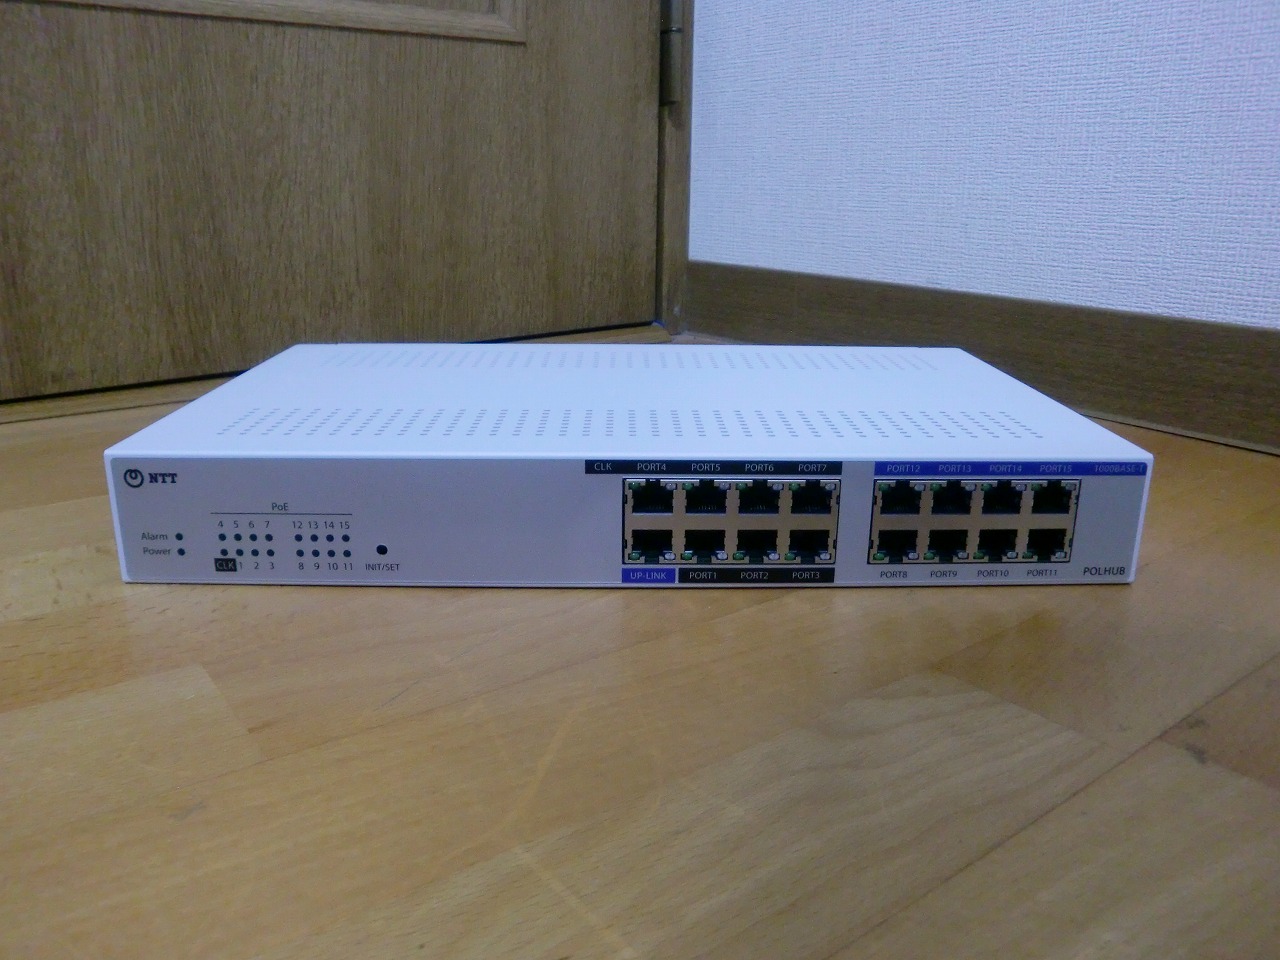 ハブ NTT A1-(16)POLHUB-(1) スマートネットコミュニティ αA1 16ポート